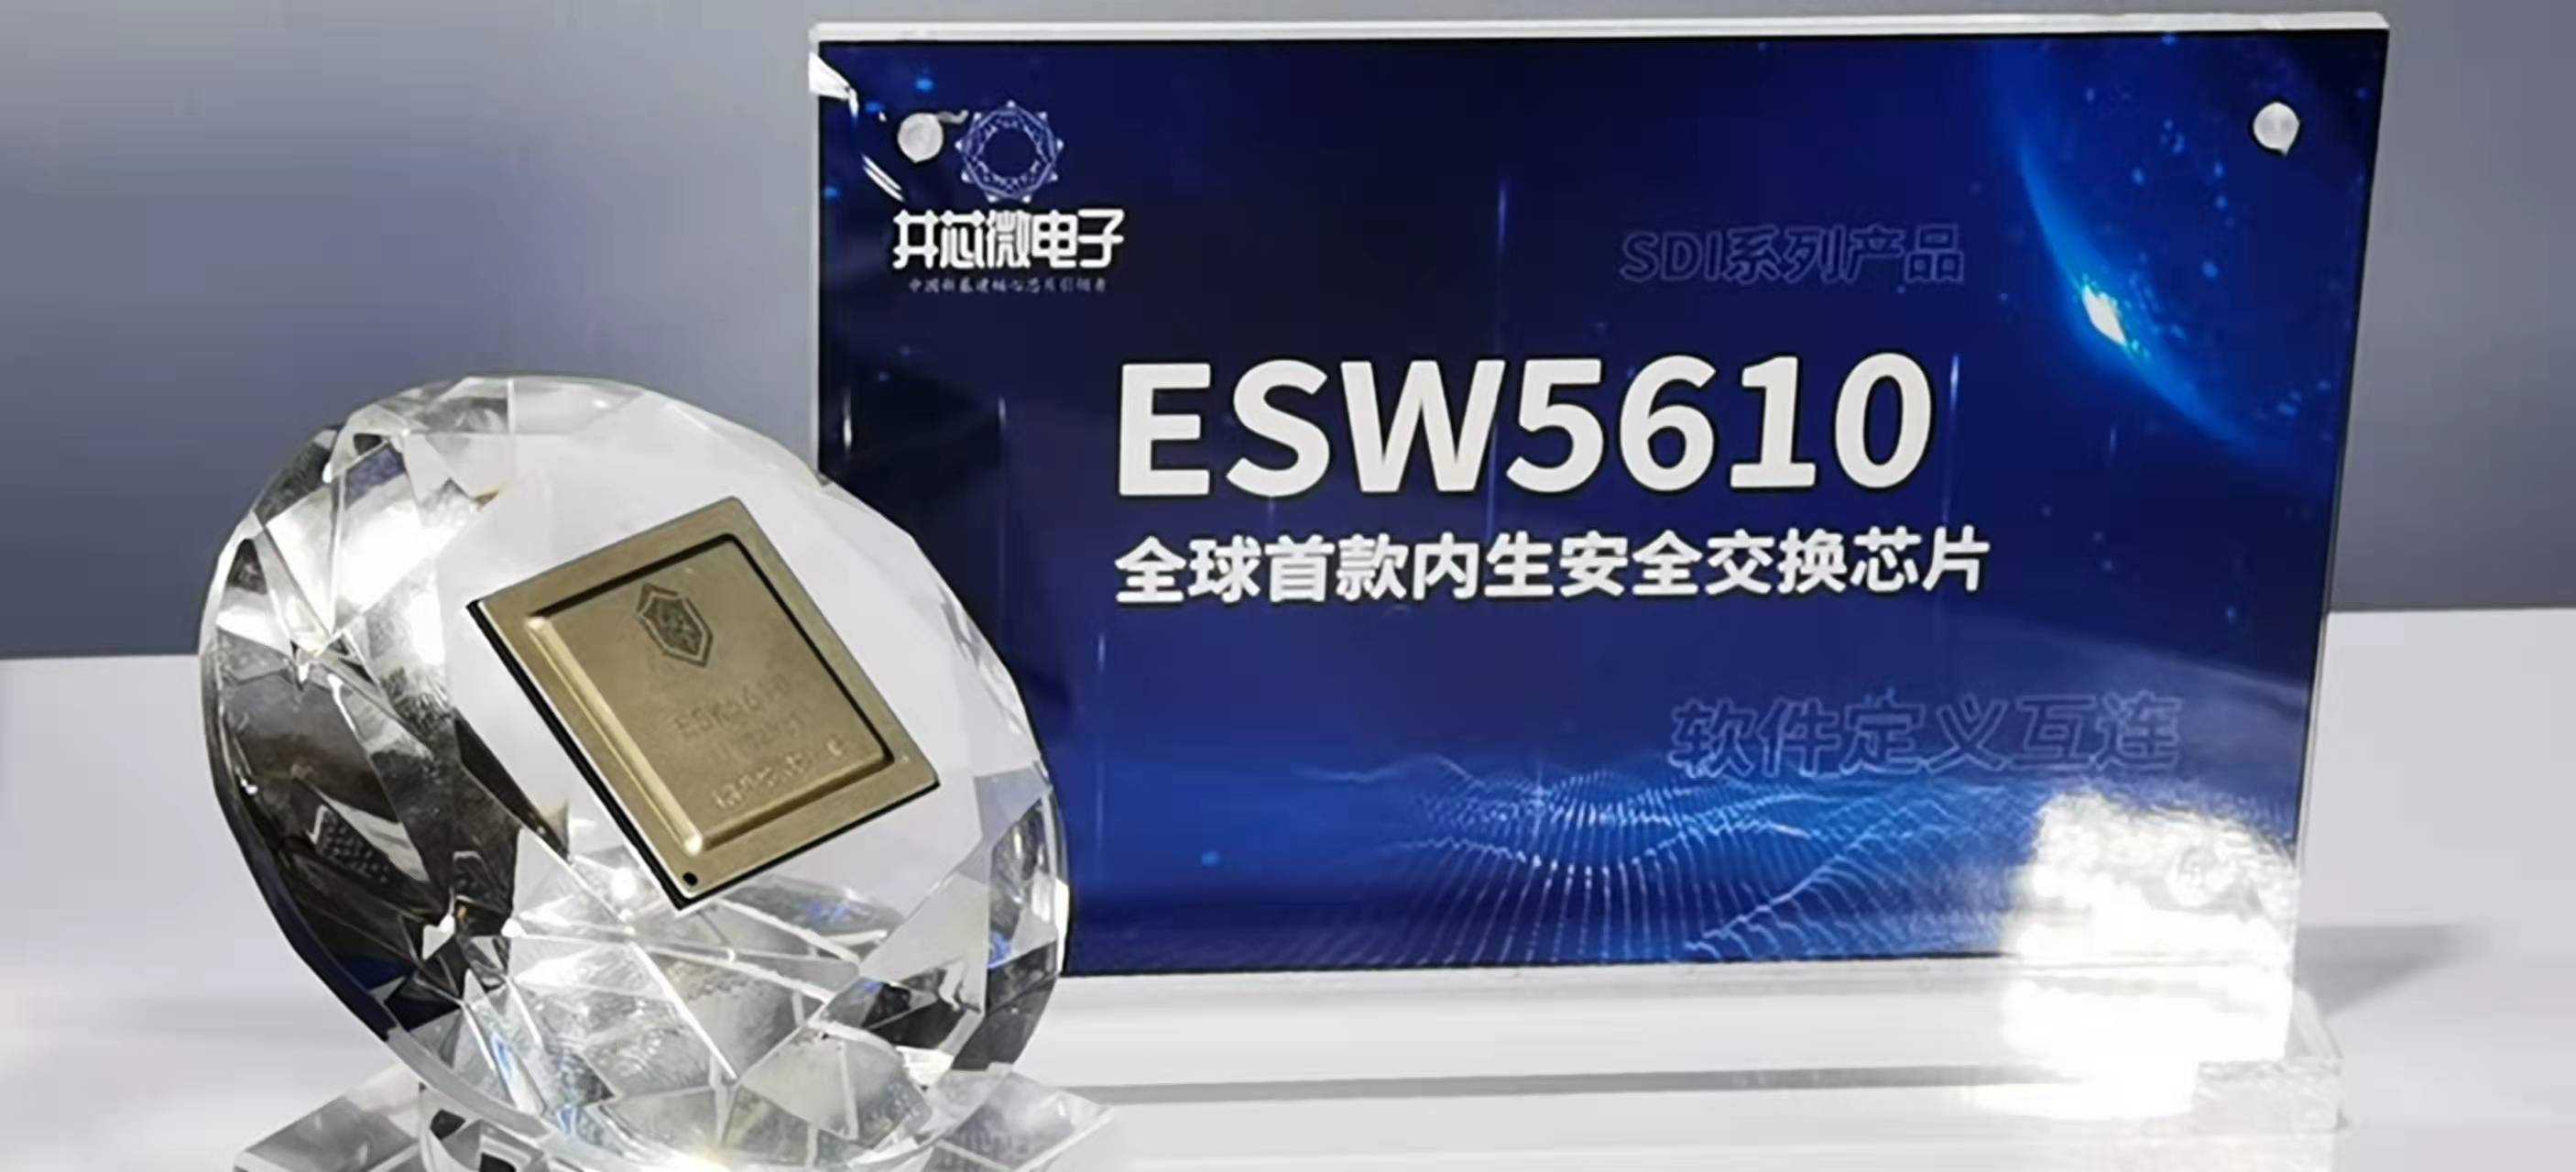 我国自主研制首款内生安全交换芯片“玄武芯”ESW5610发布，“中国信创谷”建设获强有力支撑